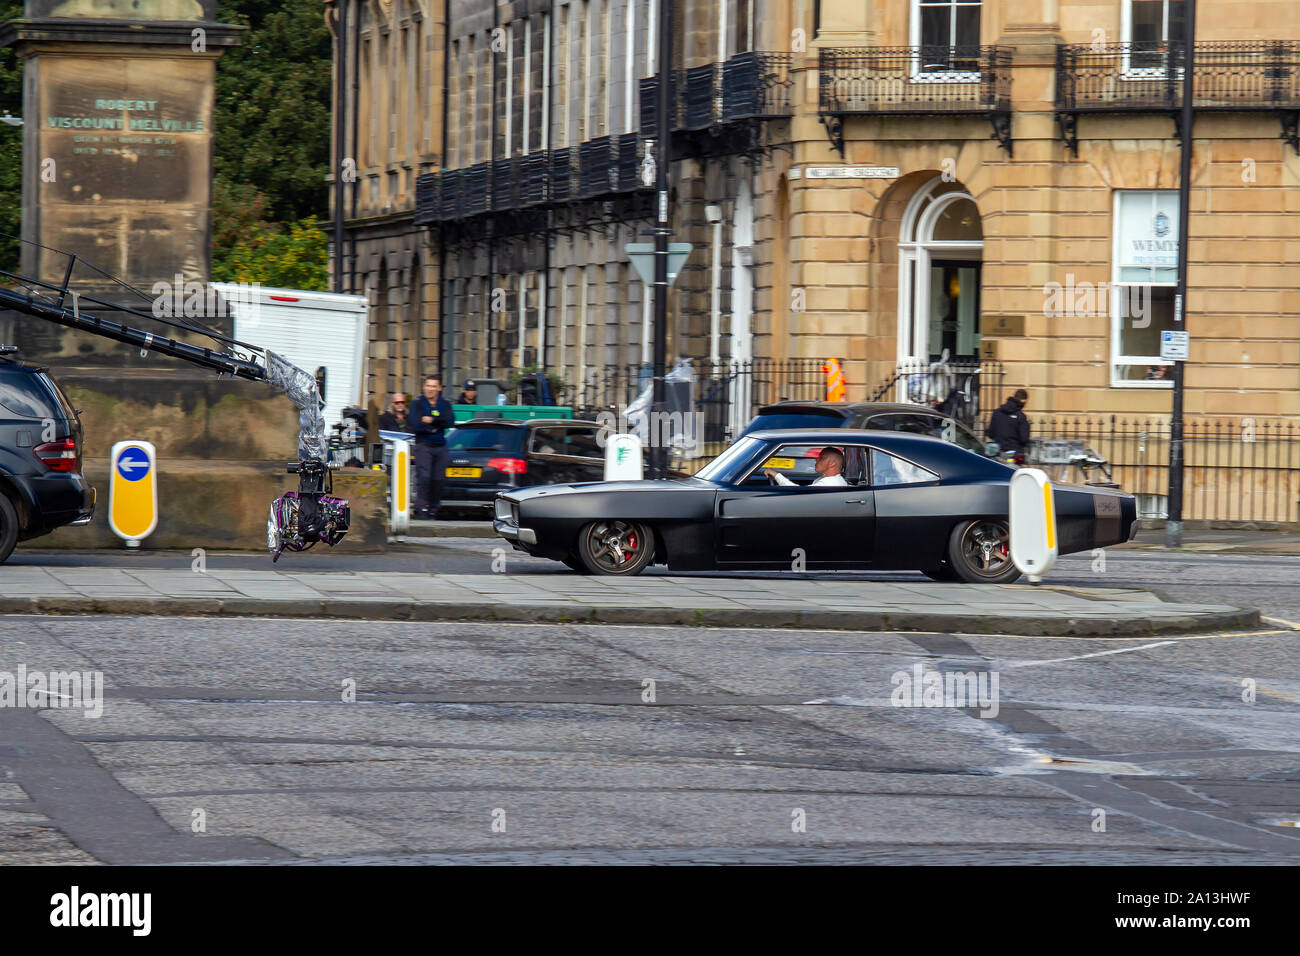 Vin Diesel stand-in unità la sua auto in fondo alla strada durante le riprese. Fast & Furious 9 ha avvolto la produzione in Edinburgh, dopo diverse settimane di riprese per il film più recente in alto numero di ottani car chase franchising. Le ultime scene sono state riprese oggi su Melville Street, una graziosa terrazza georgiana nella capitale del West End. Stunt Driver, in piedi per le stelle come Vin Diesel, hanno guidato le loro muscolo automobili su e giù per la strada, a fianco di veicoli della fotocamera. Fast & Furious 9 è dovuto per il rilascio il 22 maggio 2020. Foto Stock